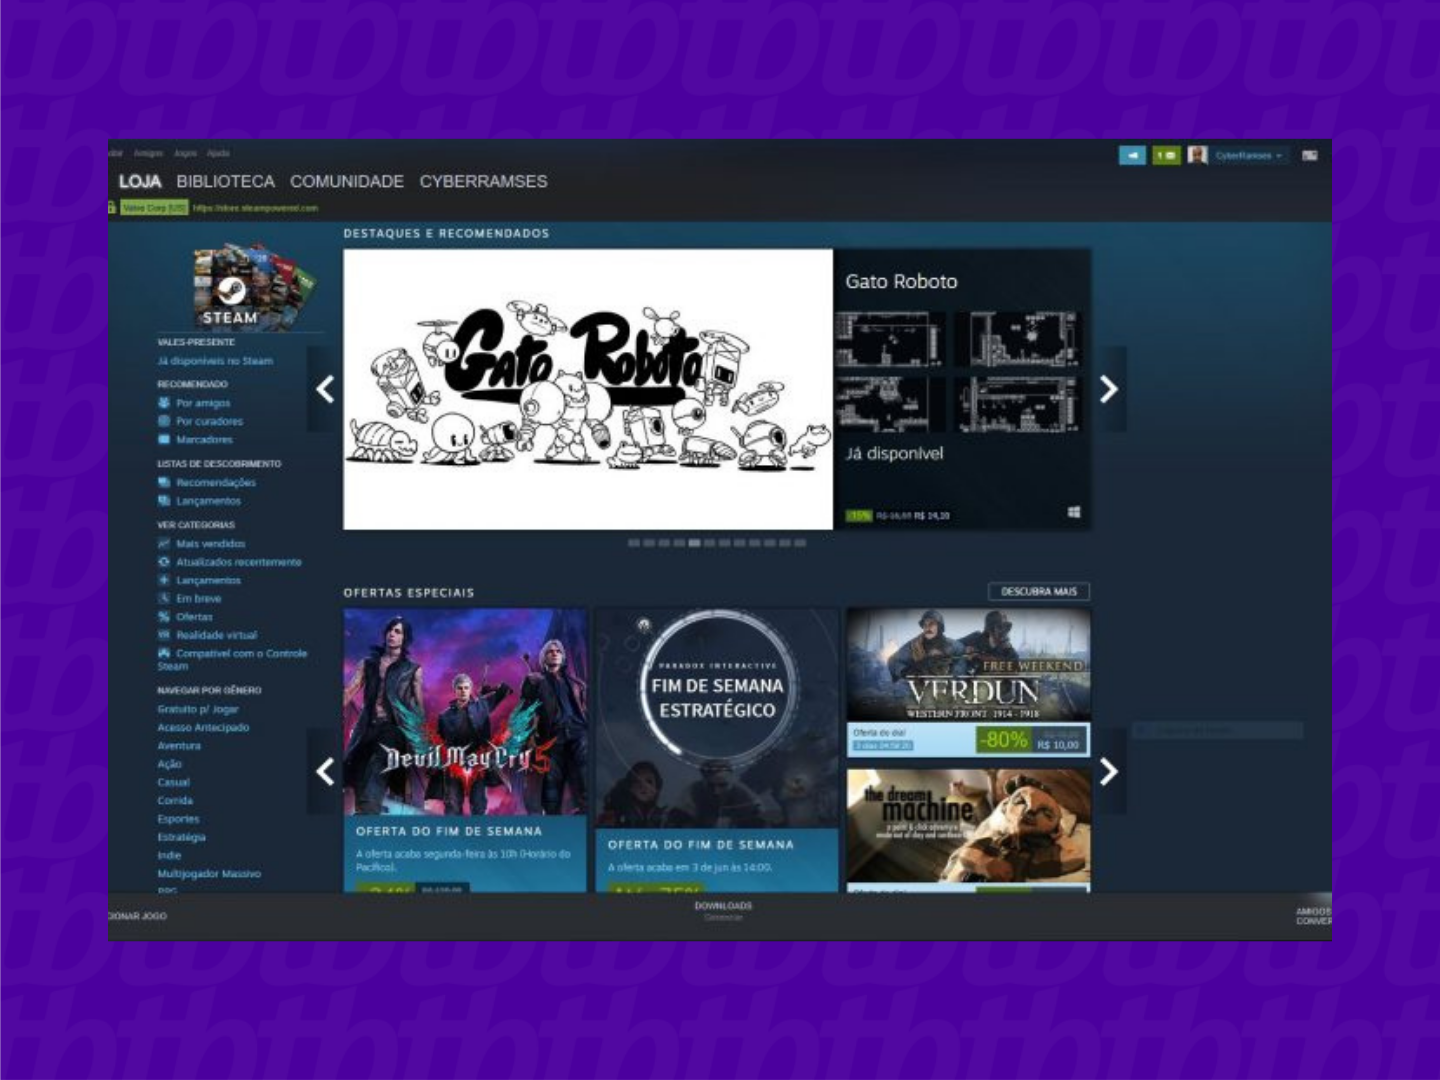 Steam, a plataforma líder em jogos online